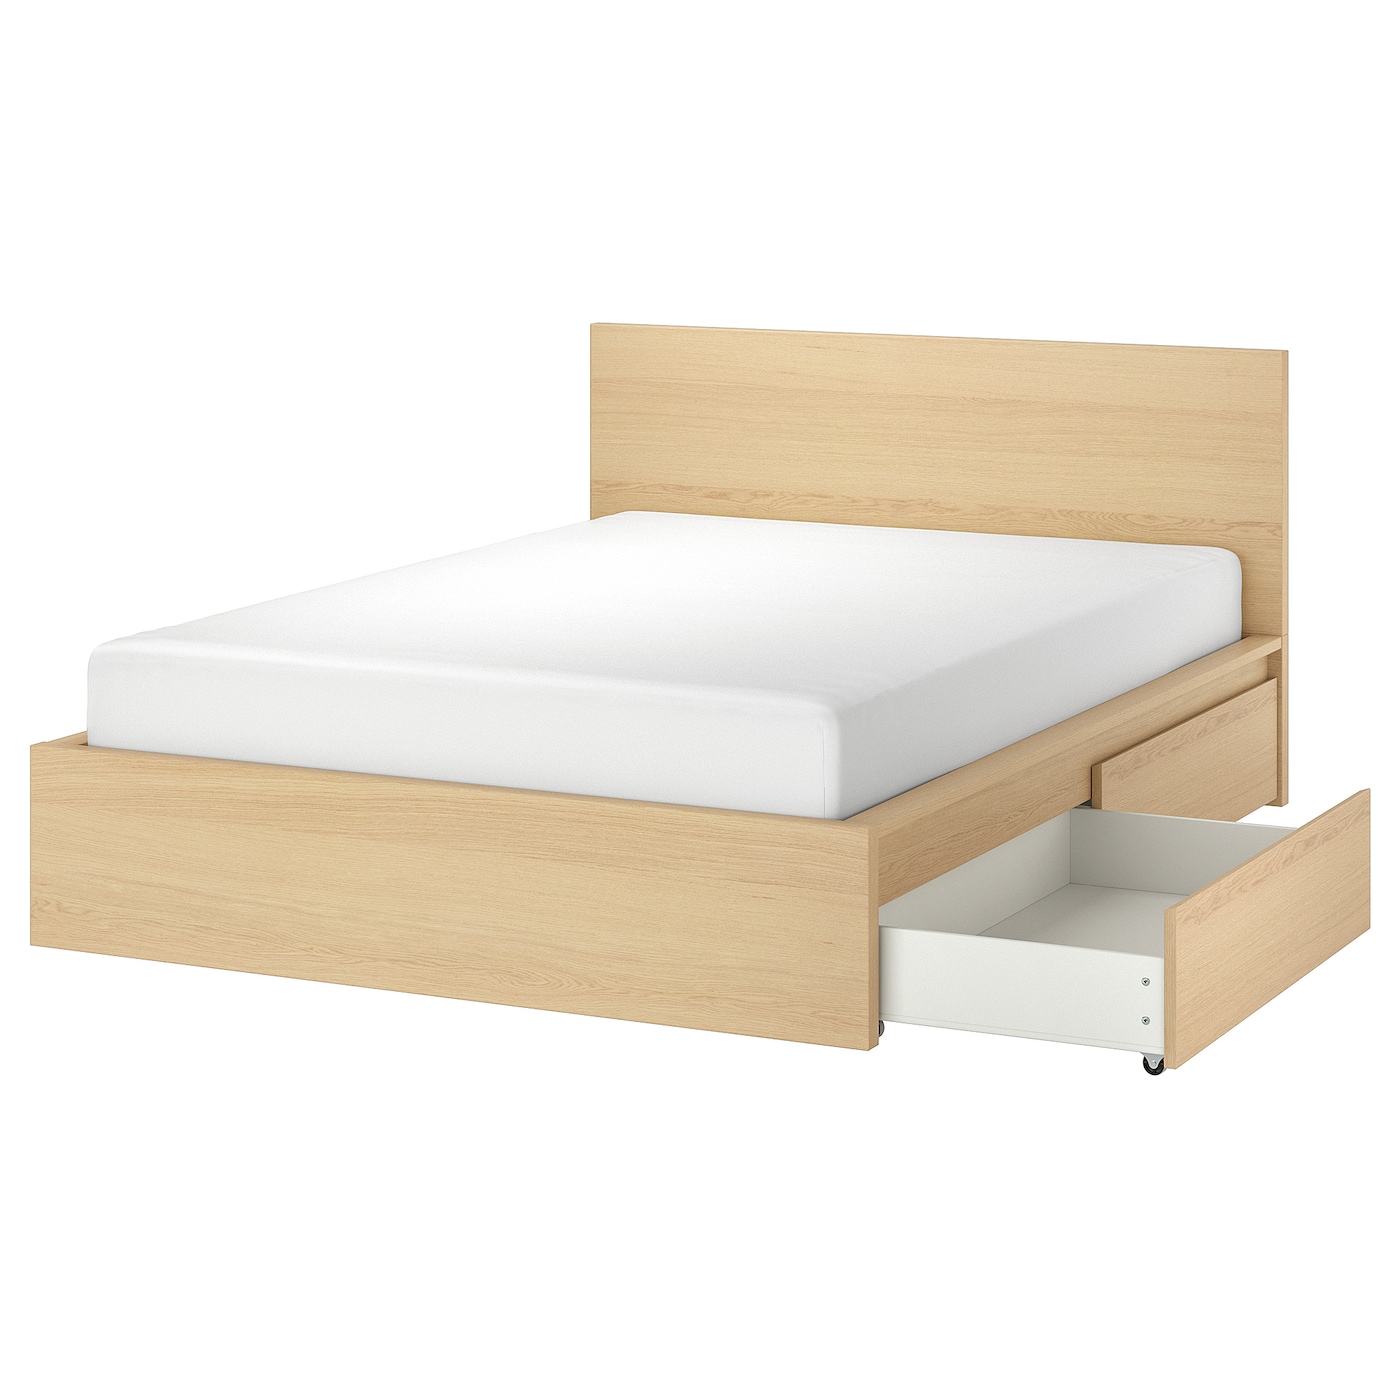 Каркас кровати с 4 ящиками для хранения - IKEA MALM, 200х180 см, под беленый дуб, МАЛЬМ ИКЕА